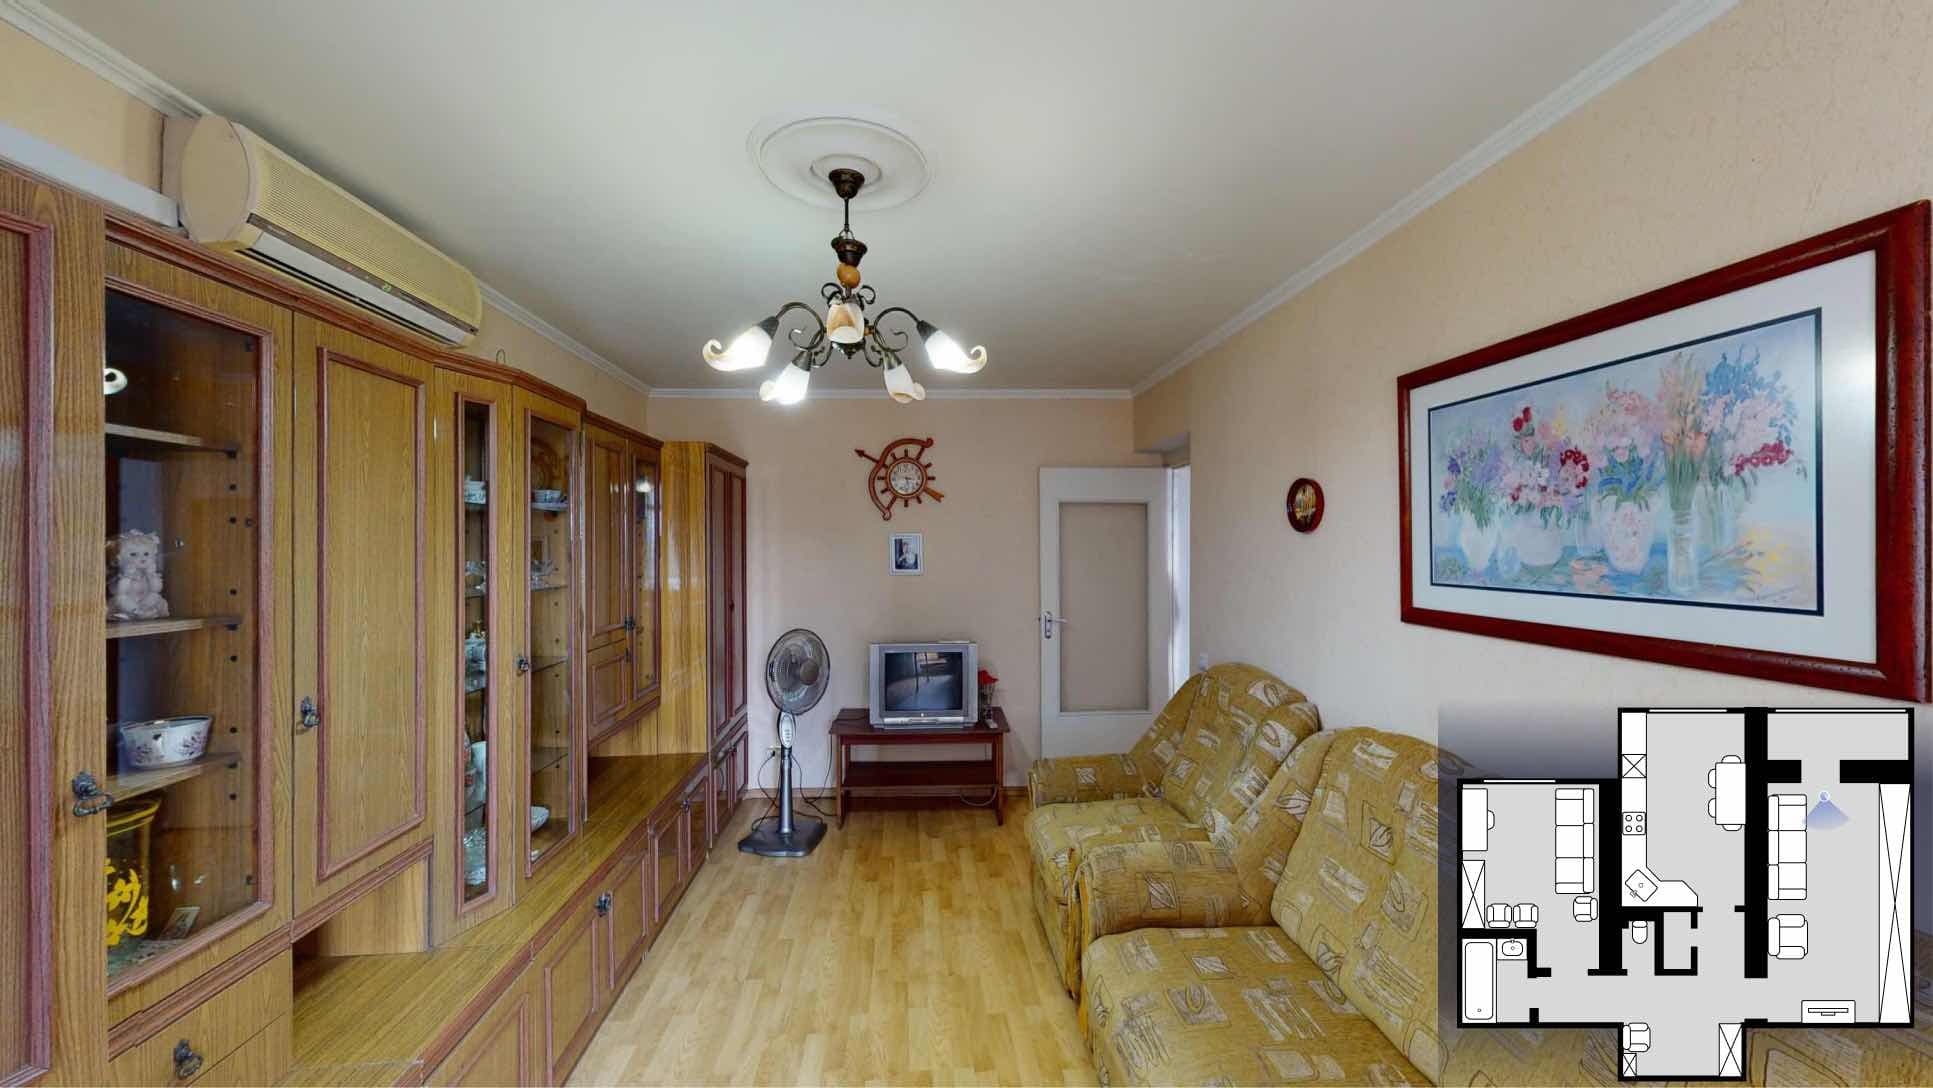 Apartament in sectorul Poşta Veche 48 m2